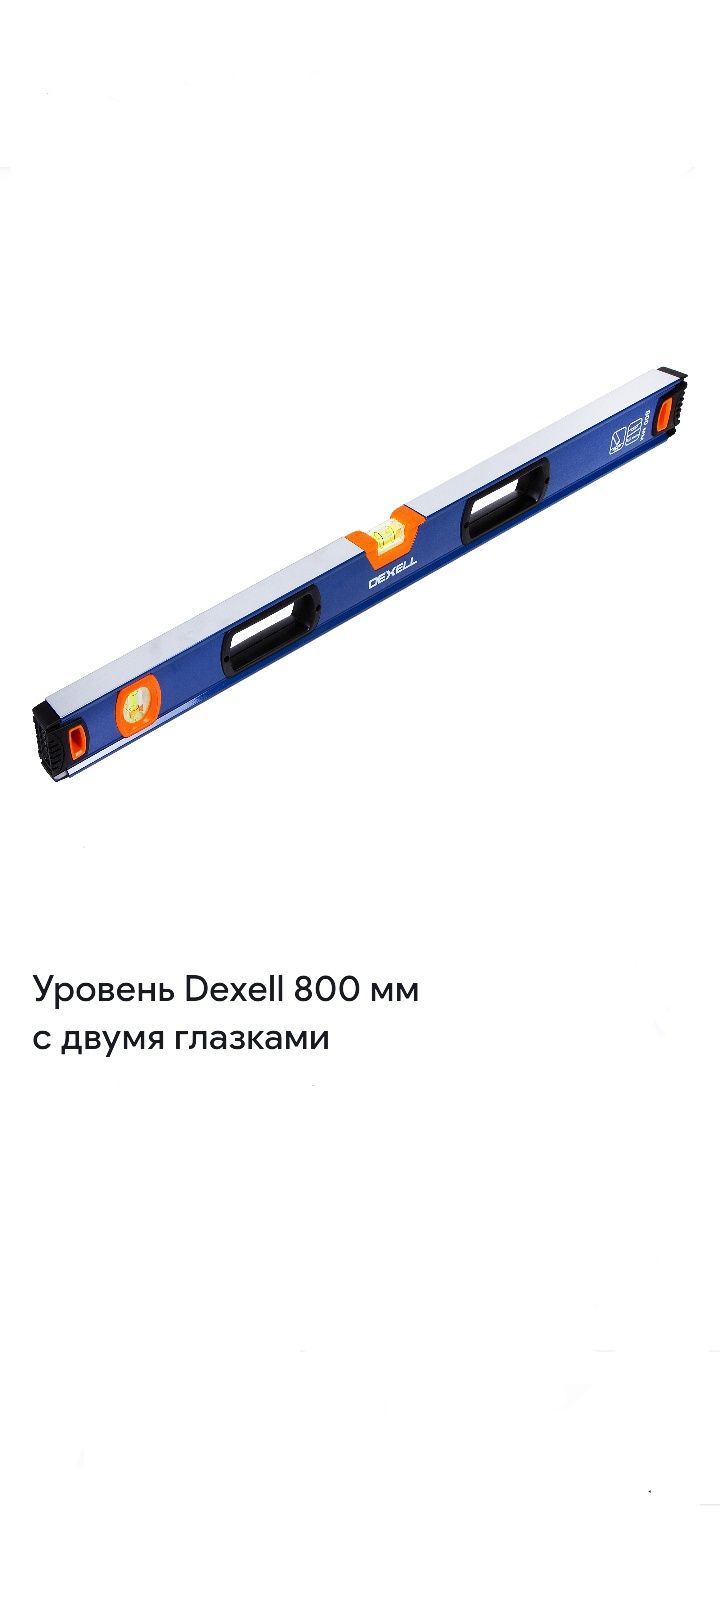 Уровень Dexell 800 мм
с двумя глазками